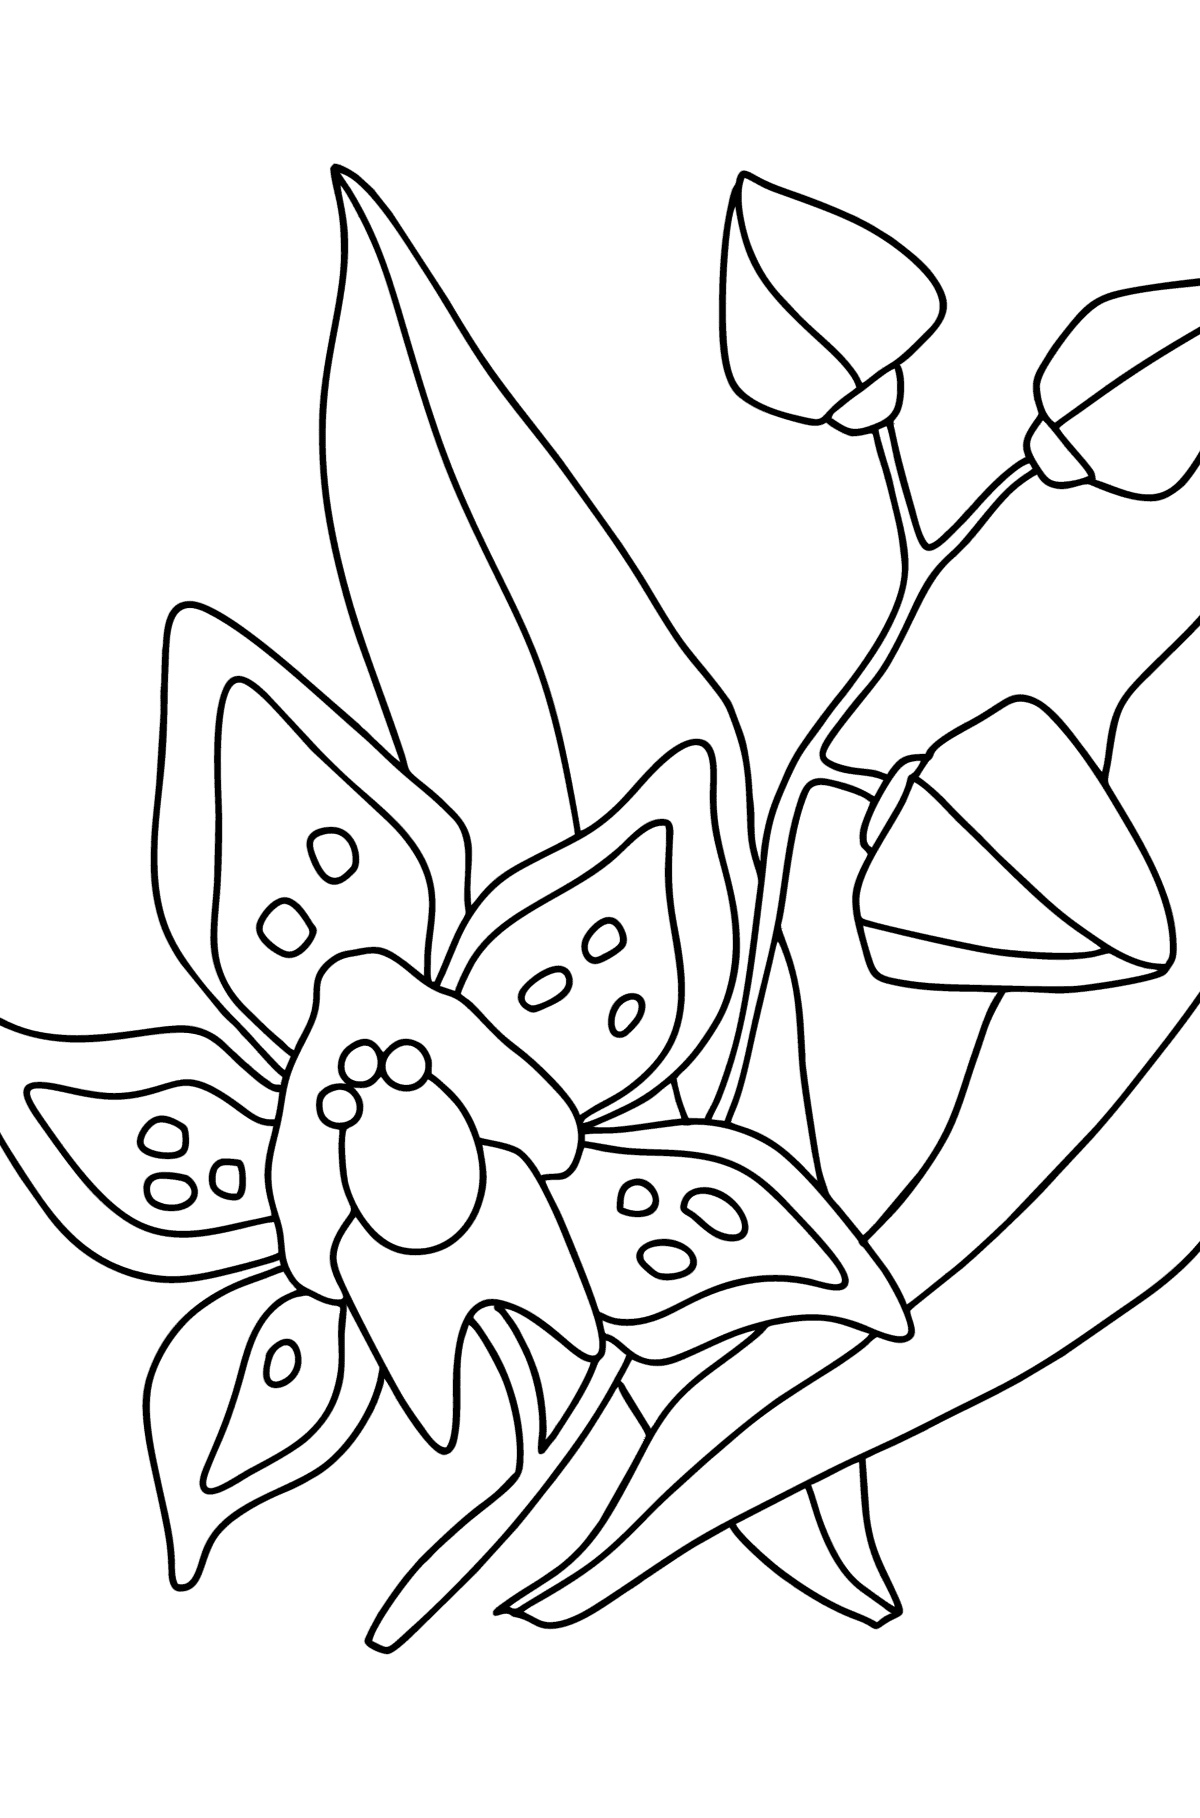 Ausmalbild Orchidee - Malvorlagen für Kinder